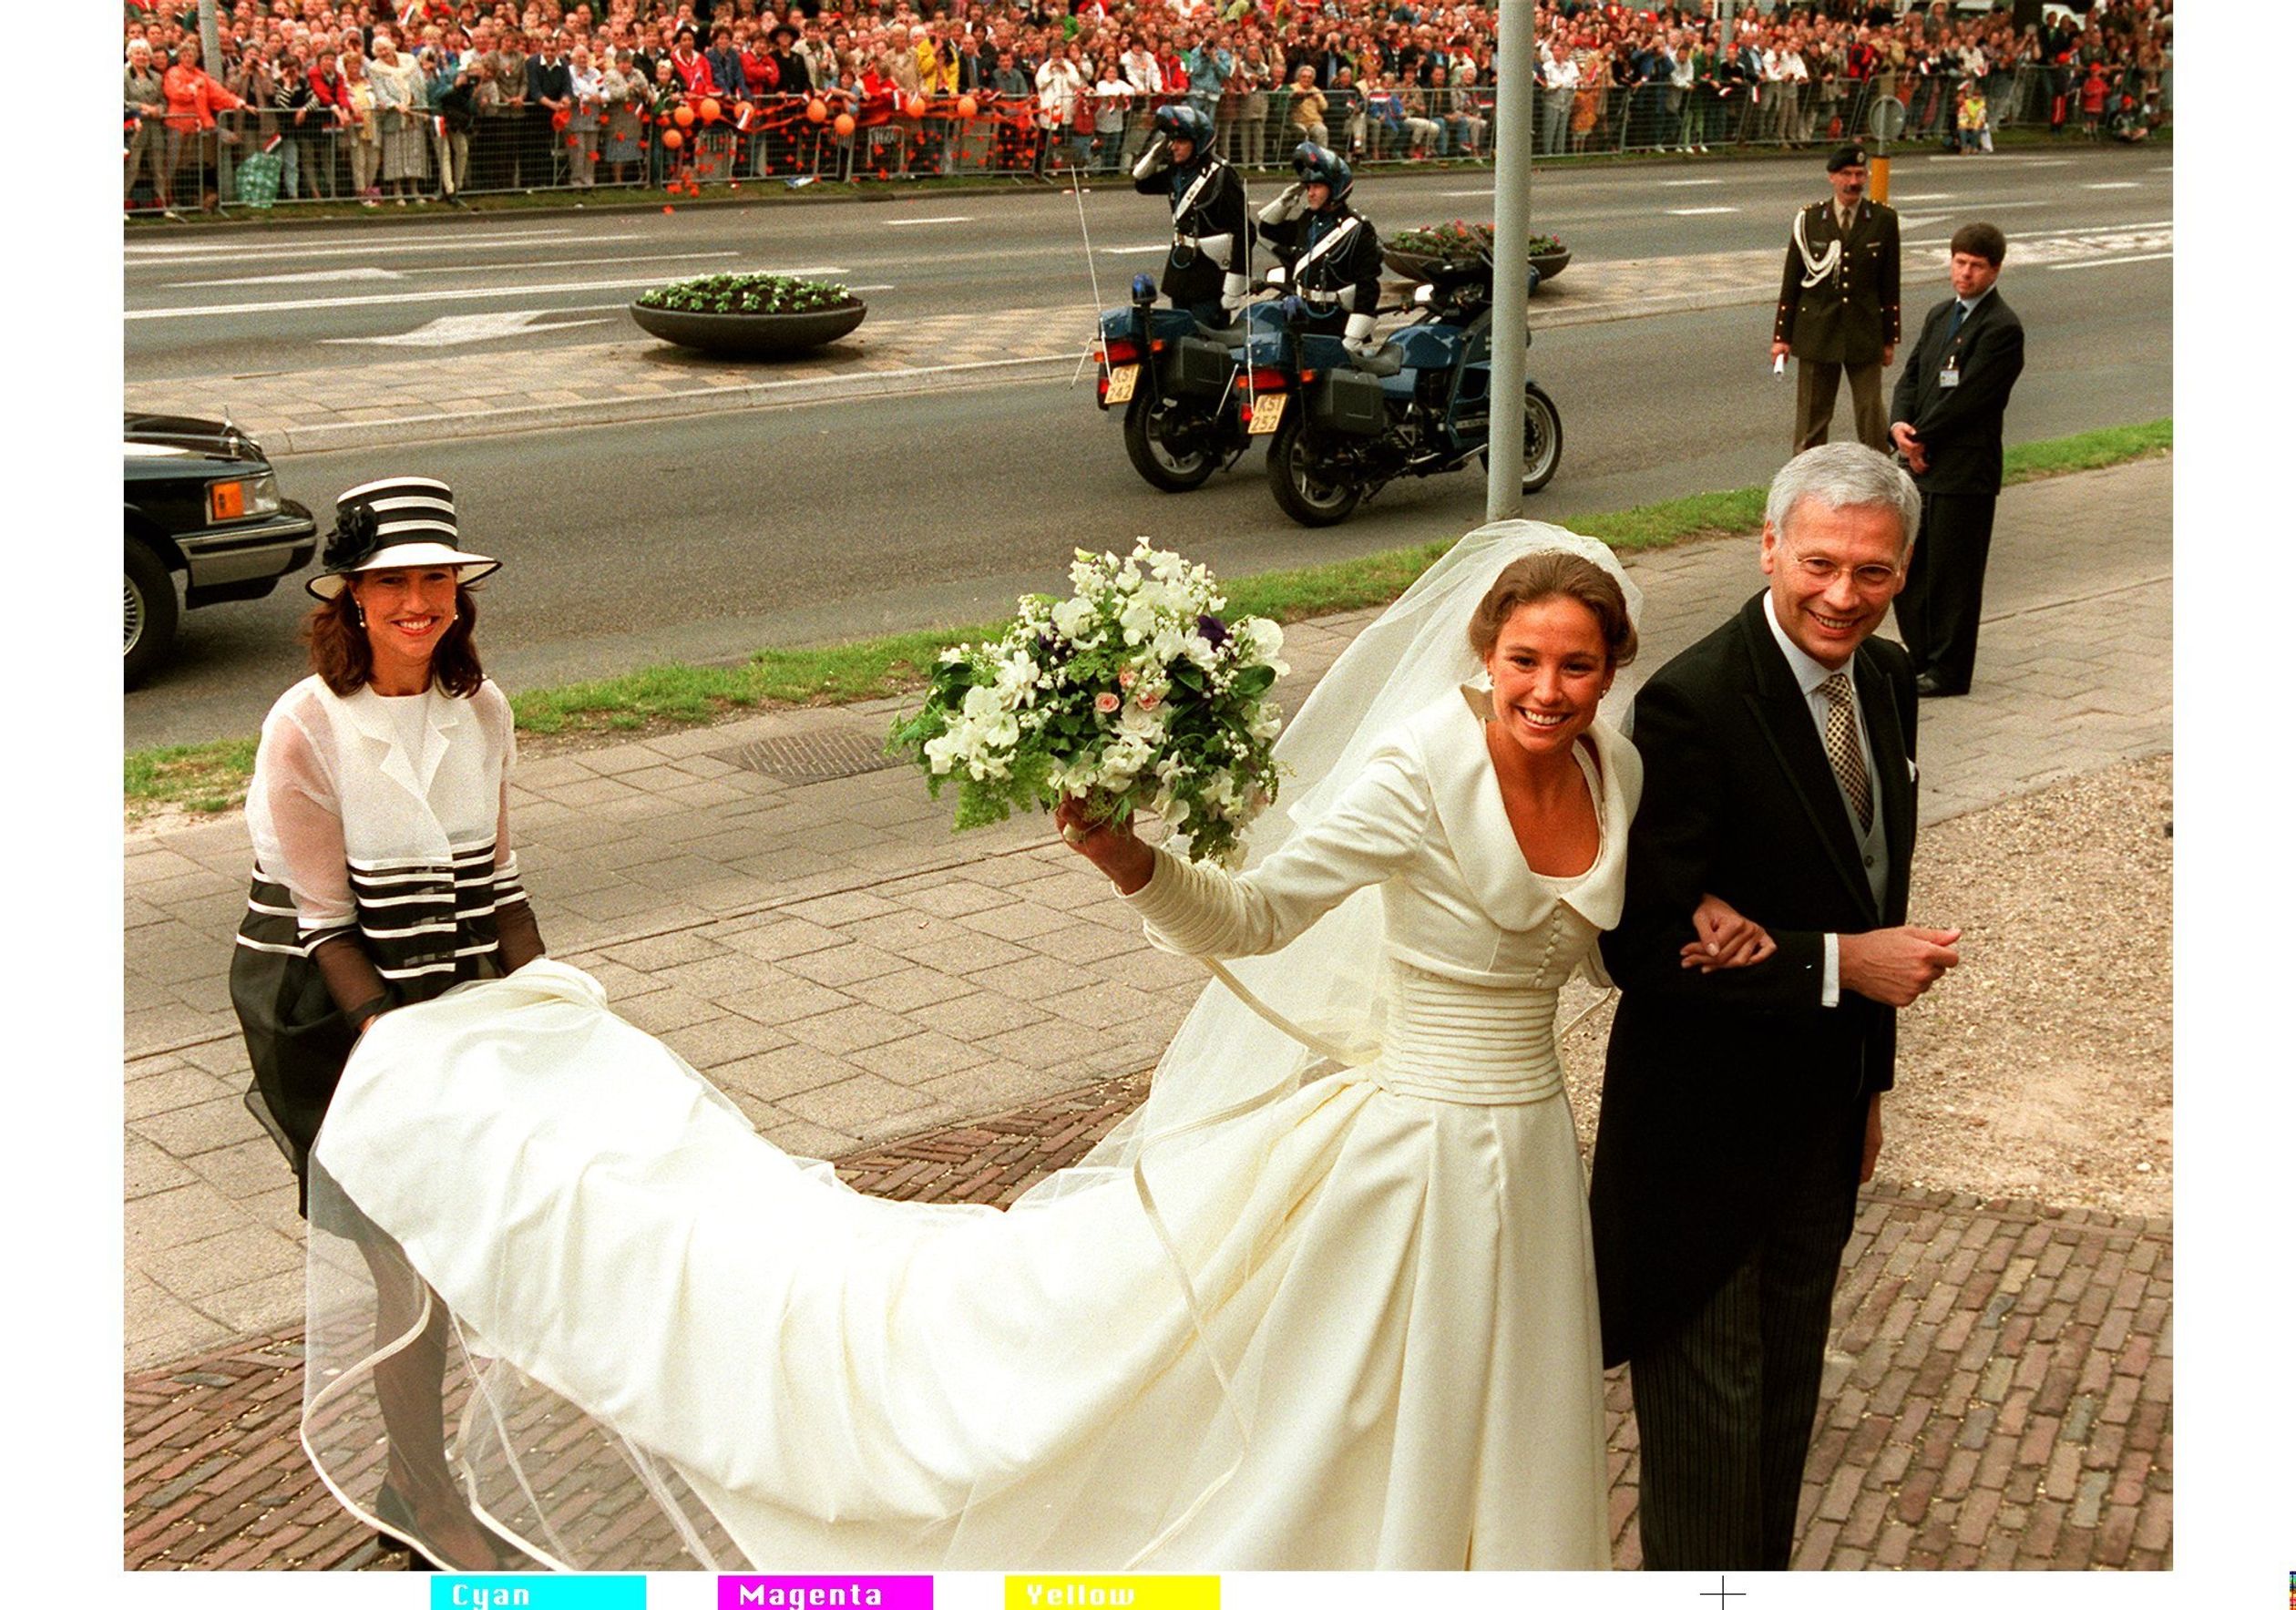 1998 was het jaar waarin prinses Marilène trouwde met prins Maurits.